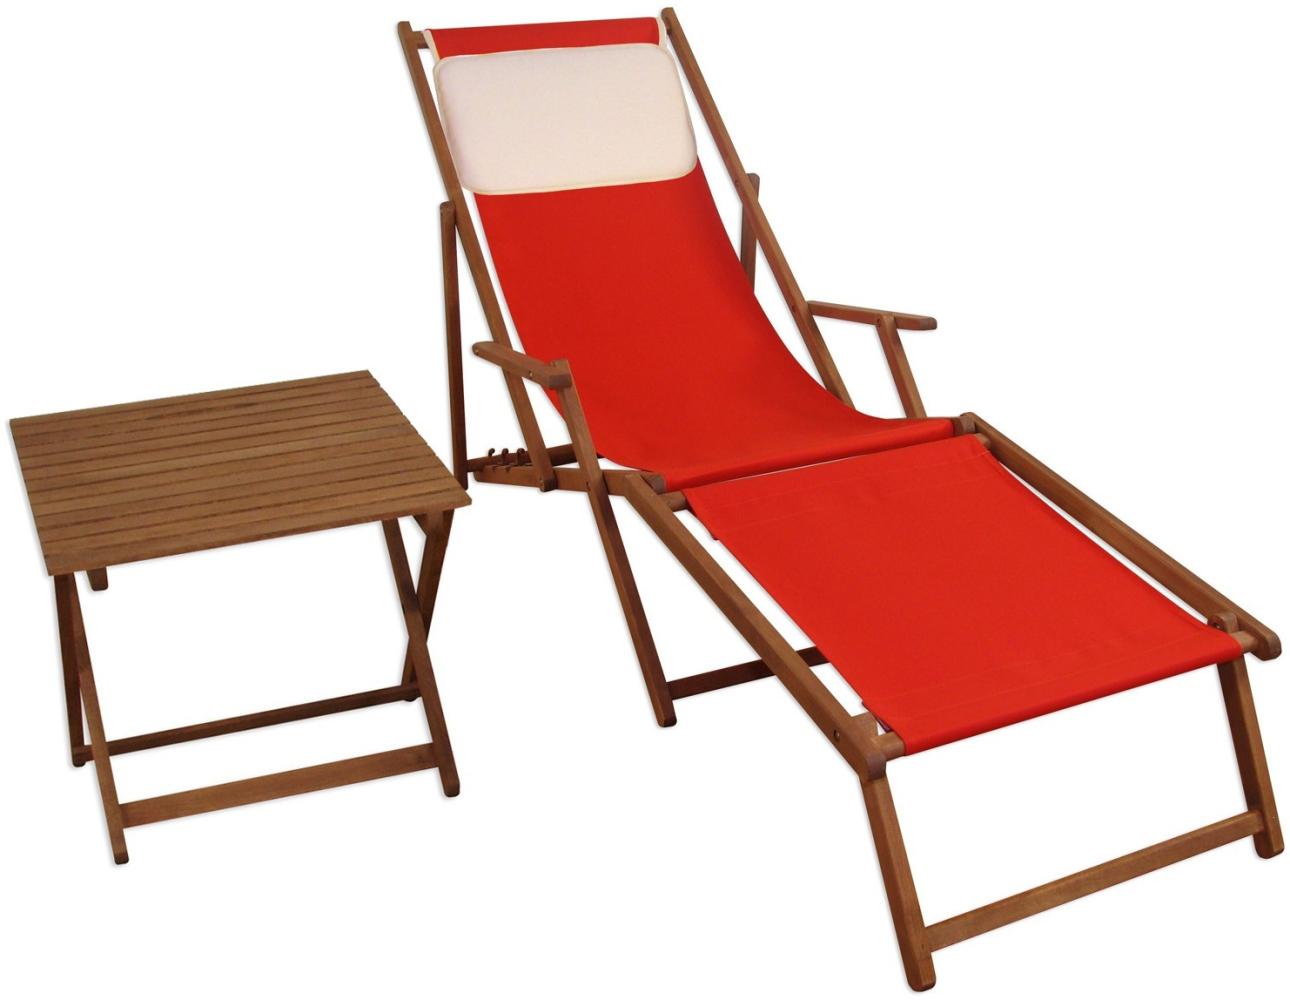 Liegestuhl rot Fußablage Tisch Kissen Deckchair Holz Sonnenliege Gartenliege Buche 10-308 F T KH Bild 1